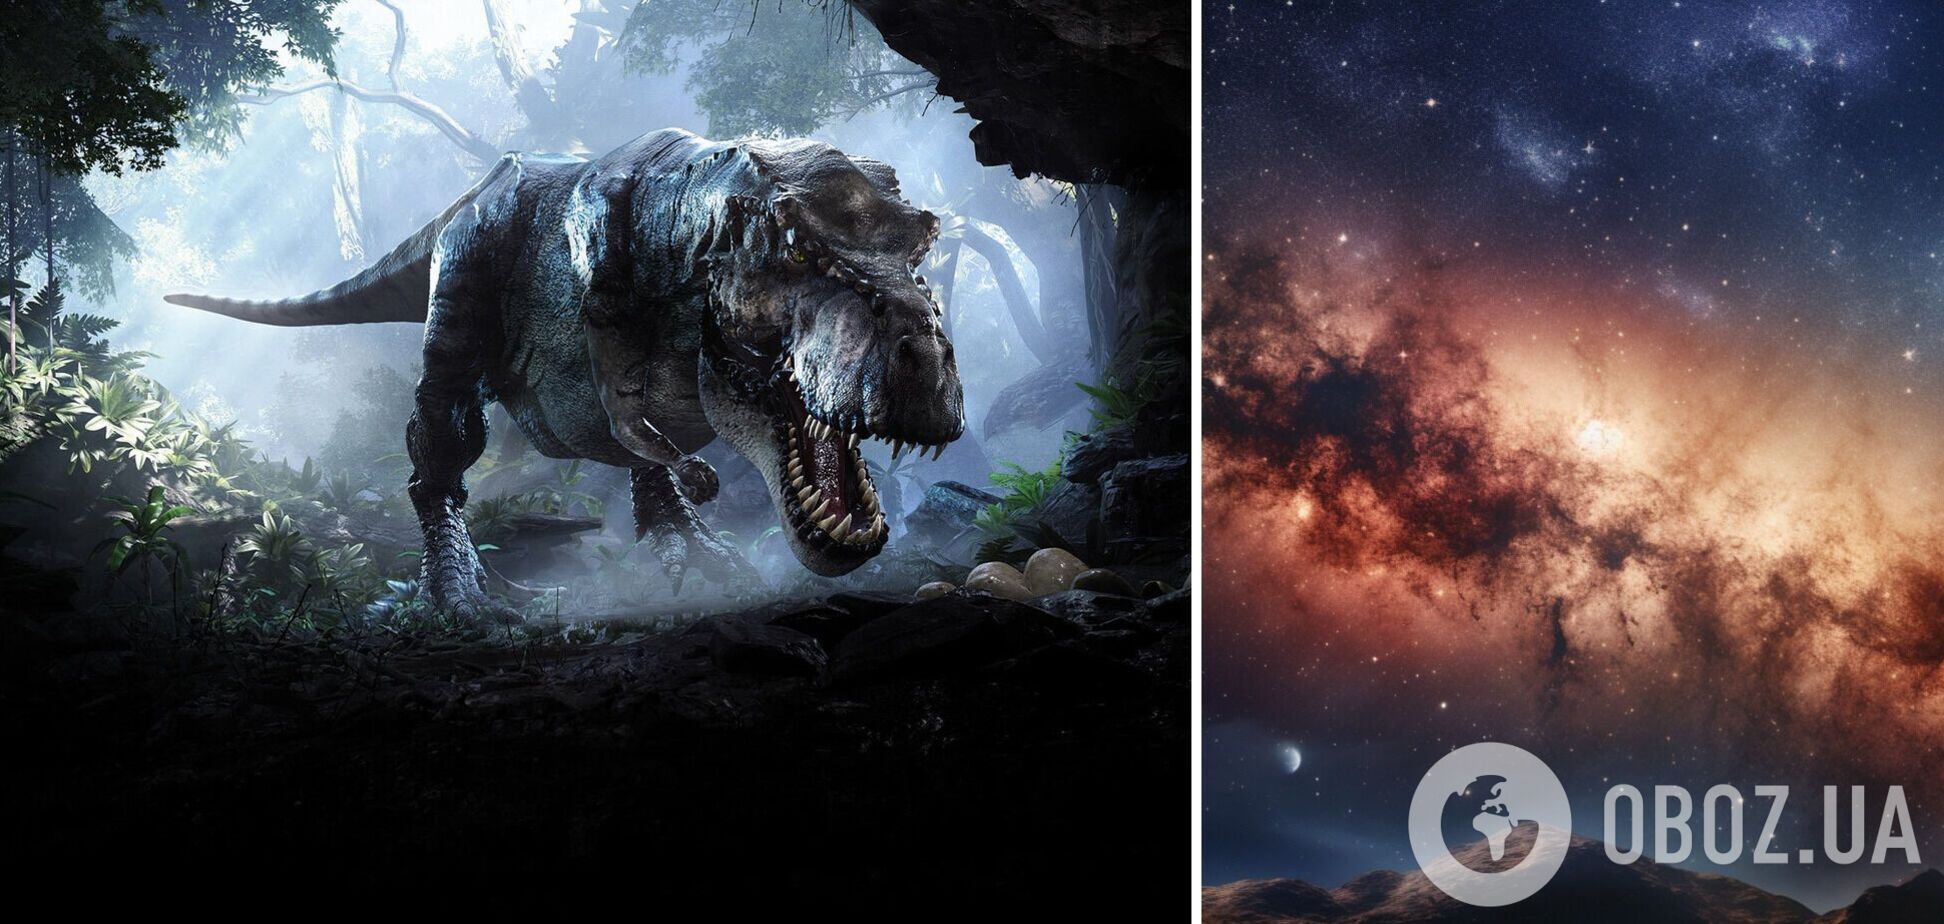 Динозавры существовали на Земле, но совсем в другой части галактики: в NASA объяснили, как это возможно